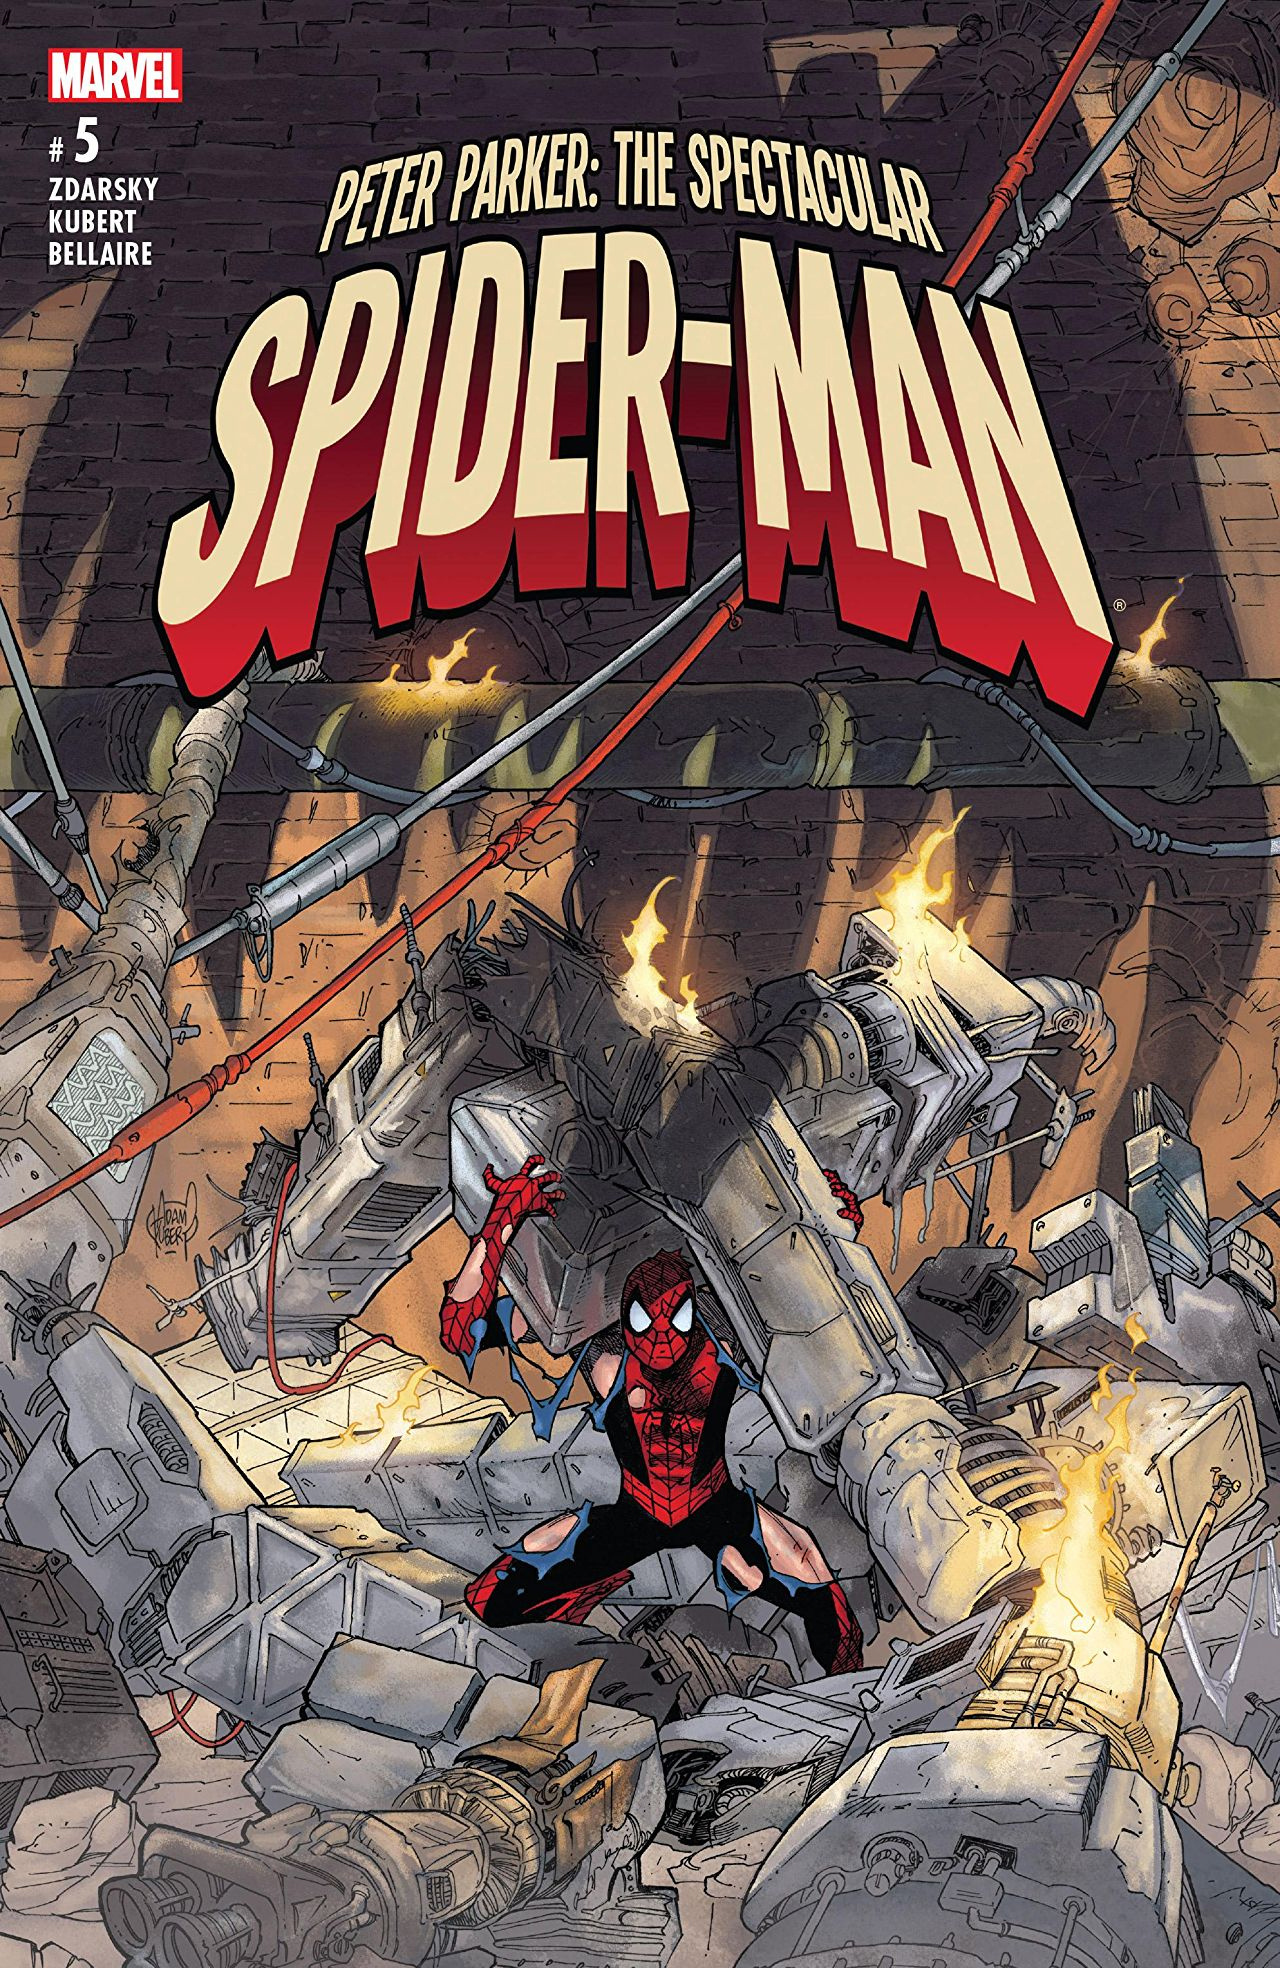 PETER PARKER SPECTACULAR SPIDER-MAN #5